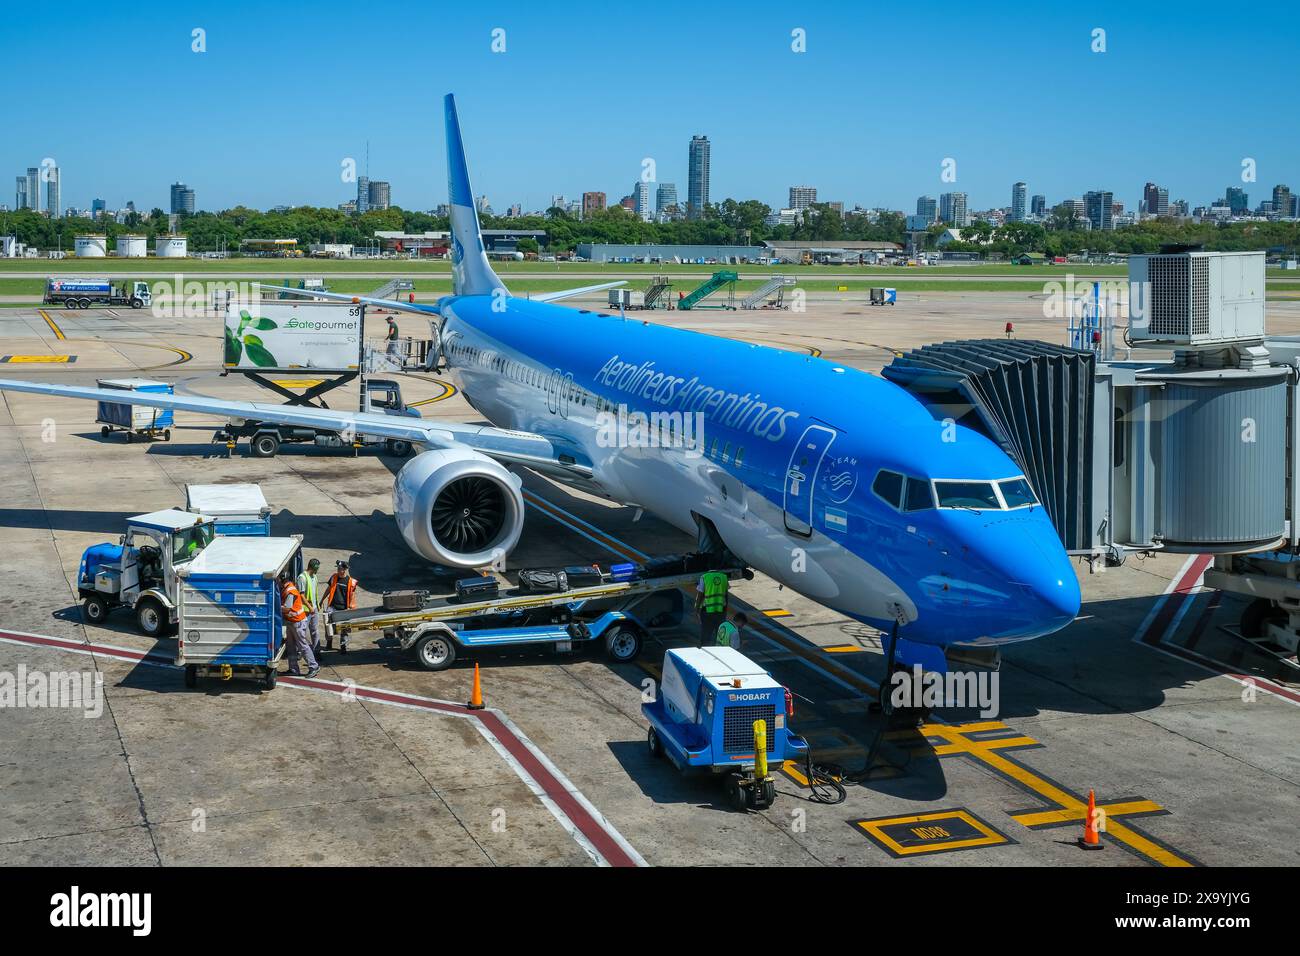 Buenos Aires, Argentinien - die Boeing 737 MAX, die von Aerolineas Argentinas betrieben wird, wird am Flughafen Buenos Aires-Jorge Newbery, AE, mit Koffern beladen Stockfoto